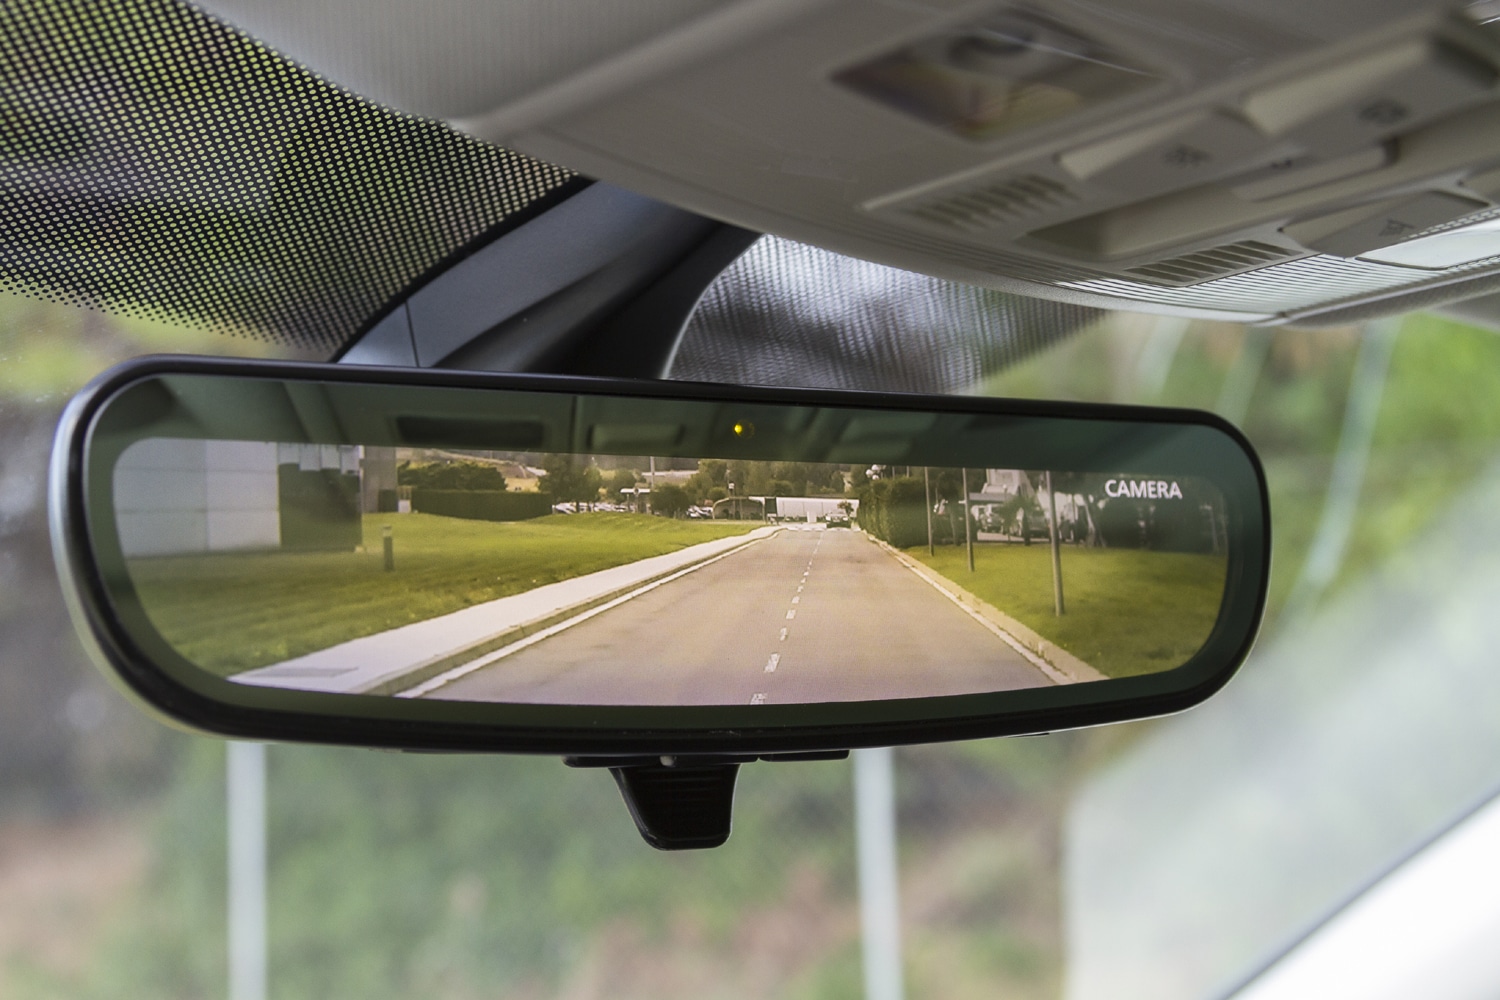 Cómo ajustar espejos retrovisores del coche según la DGT